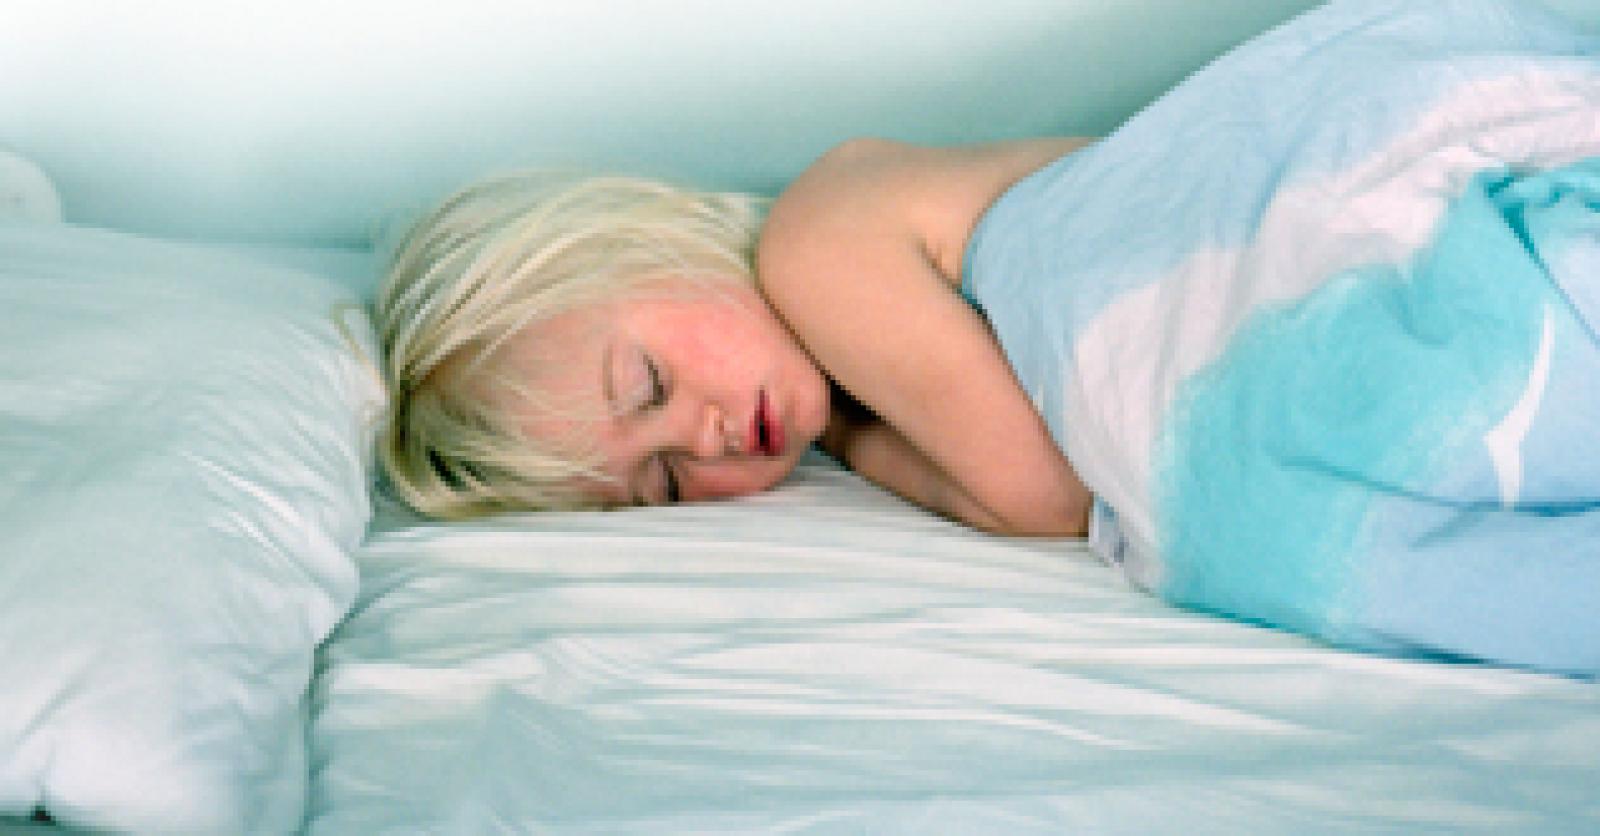 A 5 ans il fait encore pipi au lit, que faire ? : Femme Actuelle Le MAG